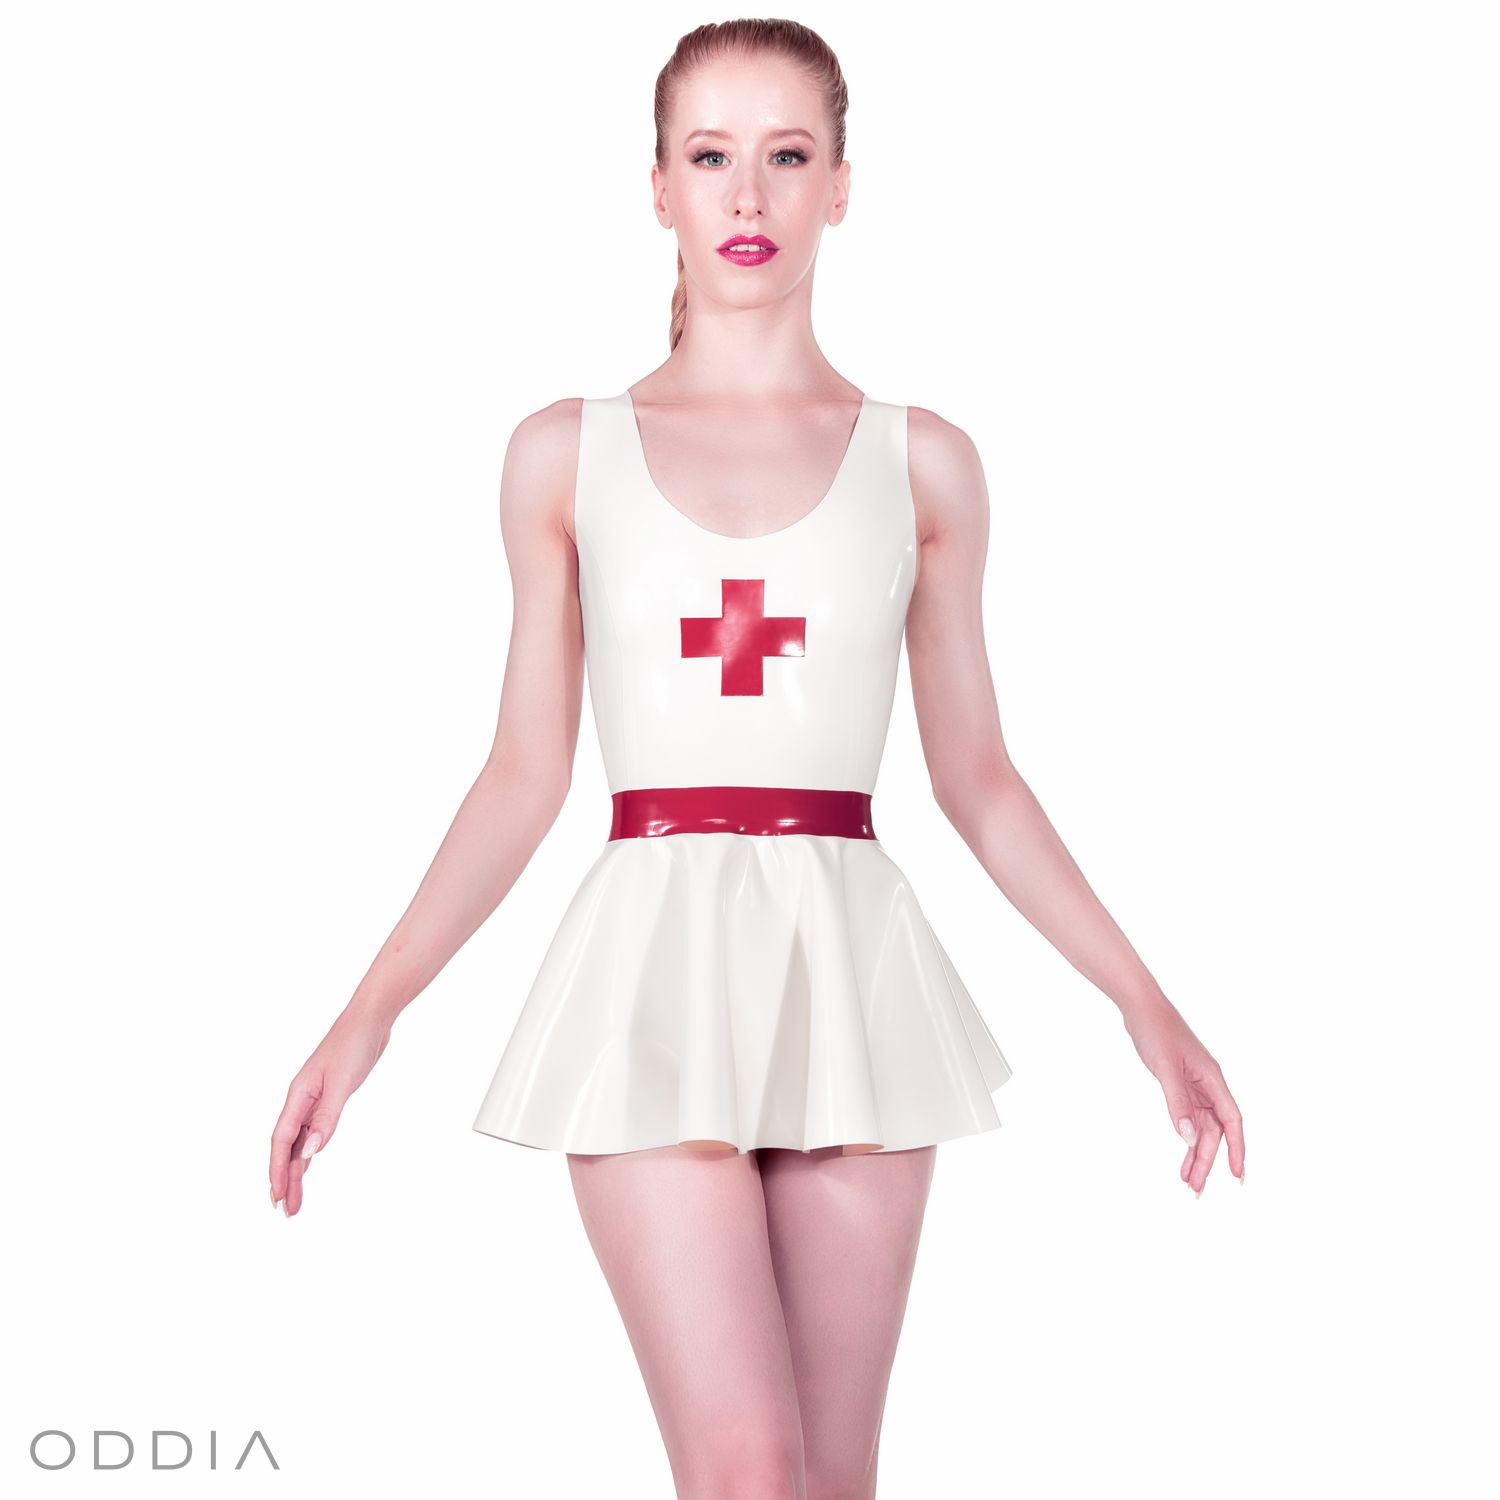 Dívka v bílých latexových šatech s křížem a červeným páskem. Krátká kolová sukně a kulatý výstřih